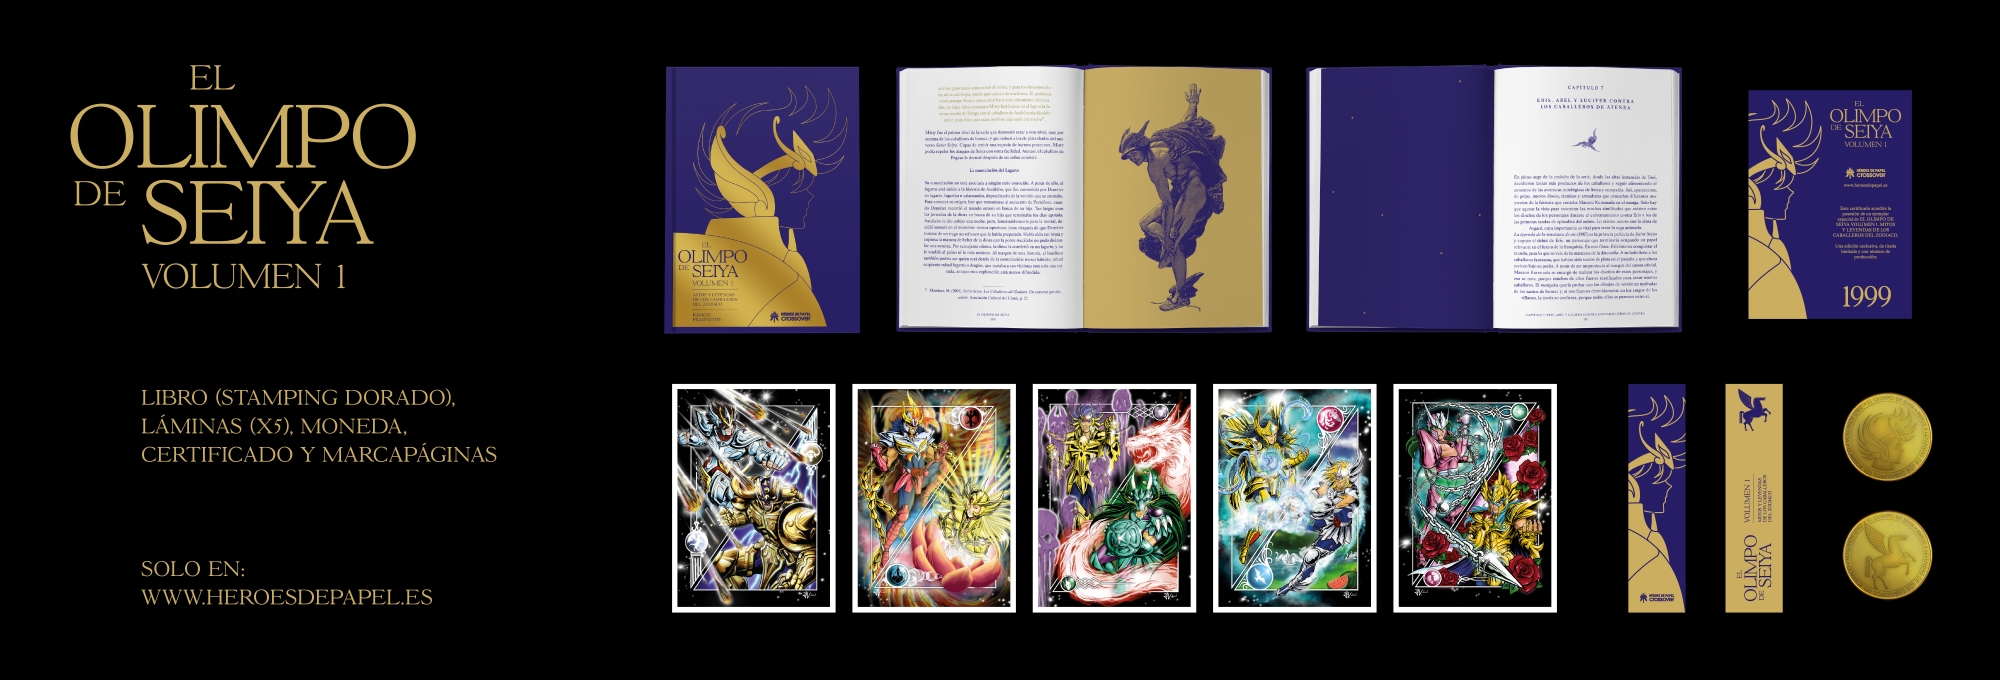 El Olimpo de Seiya (Vol. I) Mitos y Leyendas de Los Caballeros del Zodiaco